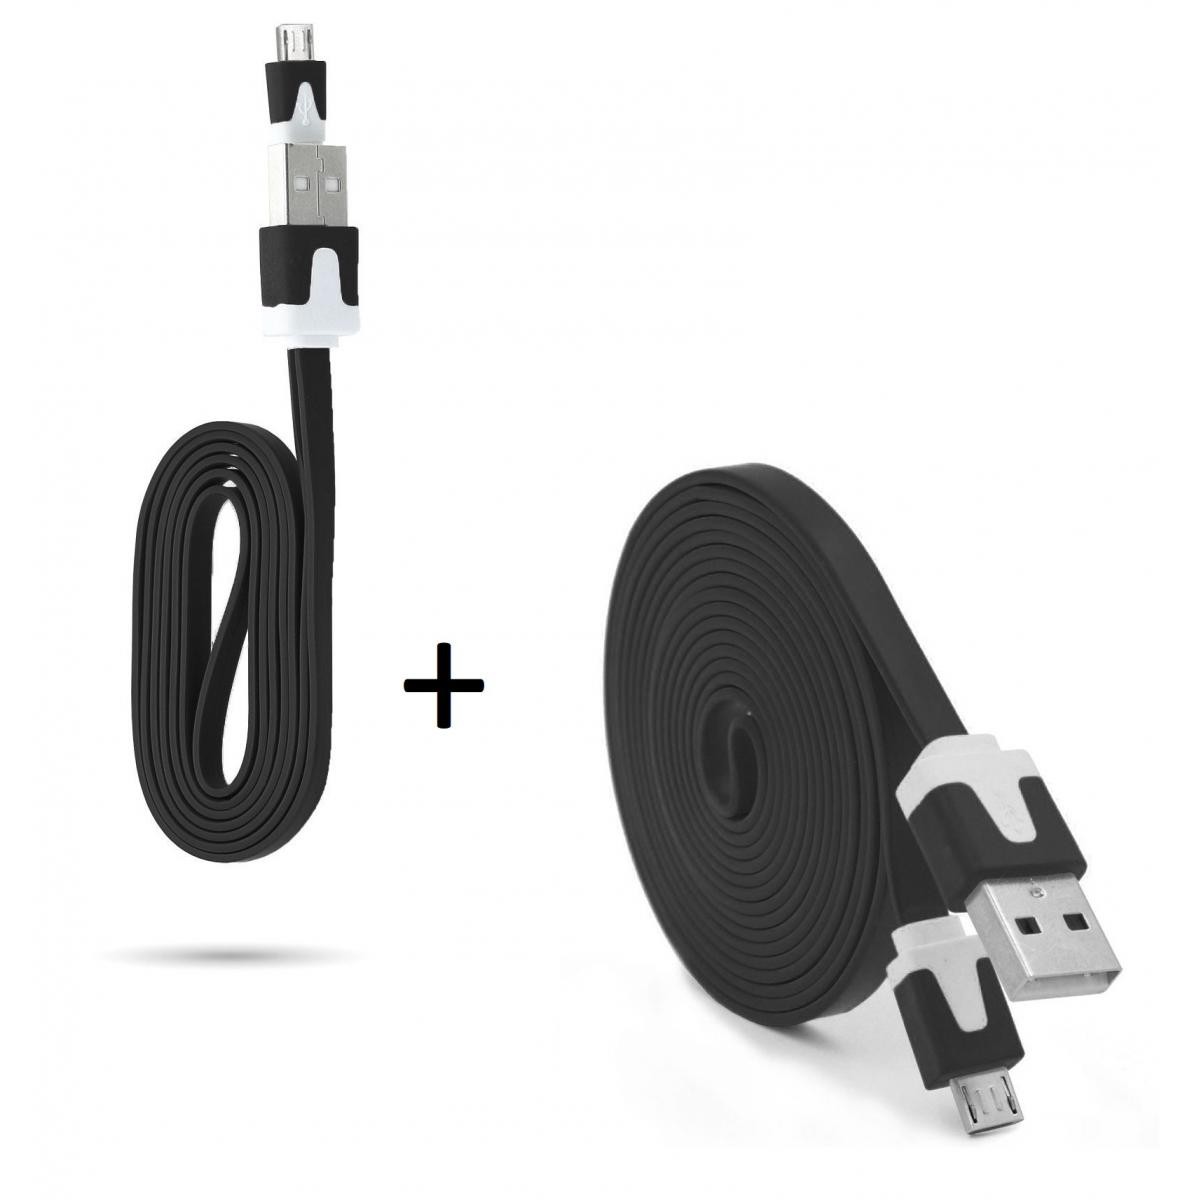 Shot - Pack Chargeur pour WIKO View 4 Lite Smartphone Micro USB (Cable Noodle 3m + Cable Noodle 1m) Android (NOIR) - Chargeur secteur téléphone